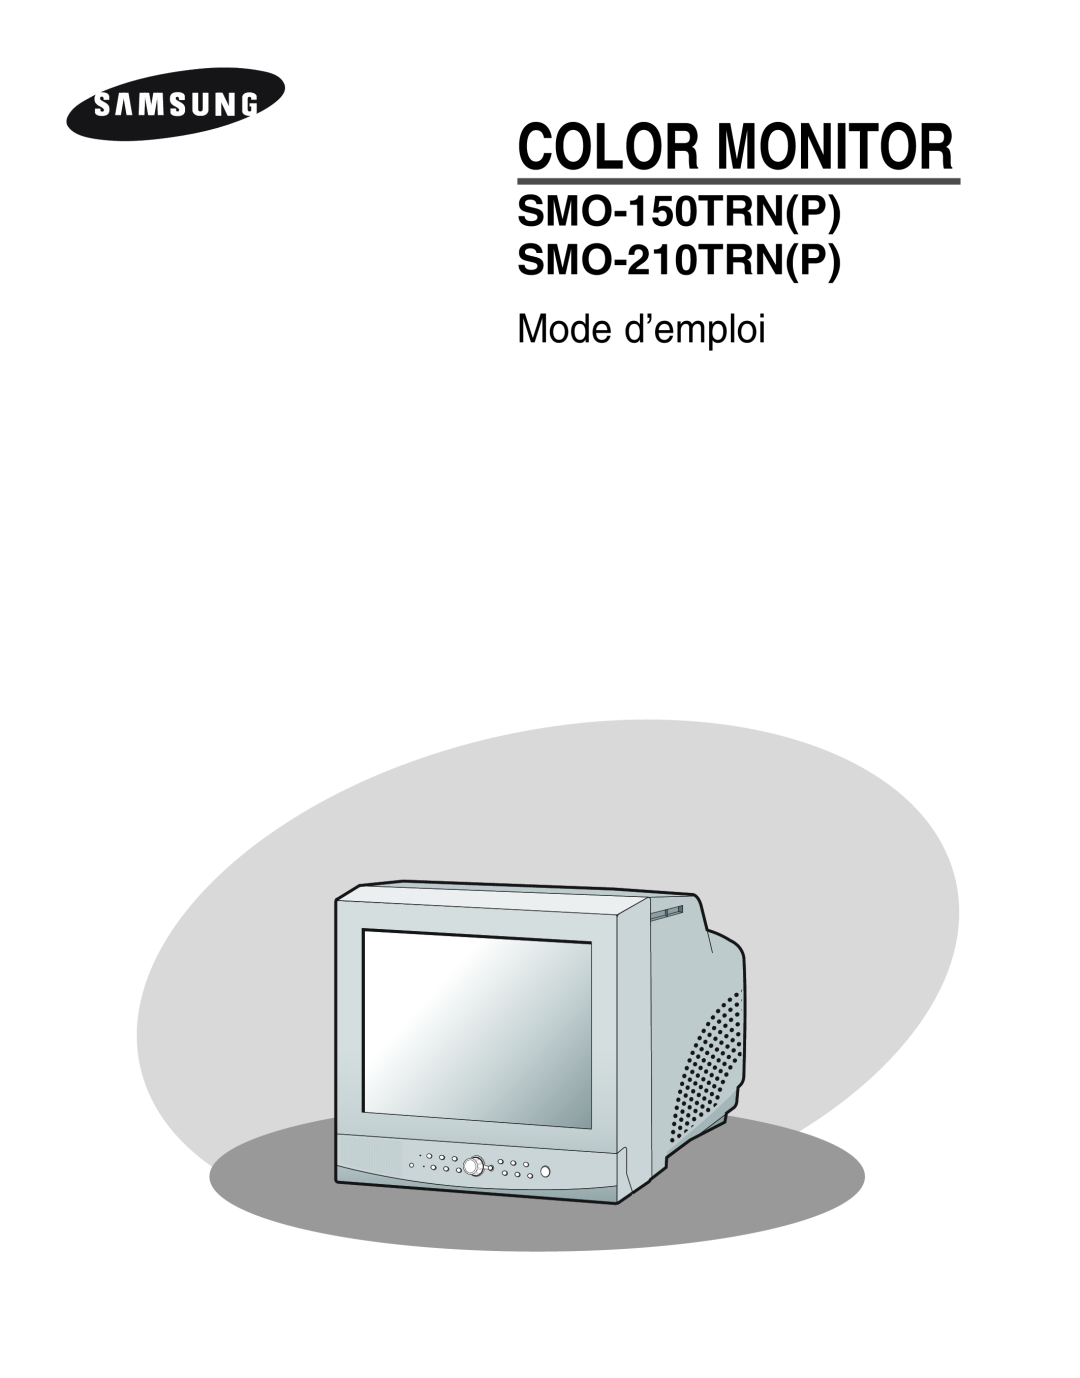 Samsung SMO-210TRP, SMO-210MP/UMG manual Mode d’emploi, Color Monitor, SMO-150TRNP SMO-210TRNP 